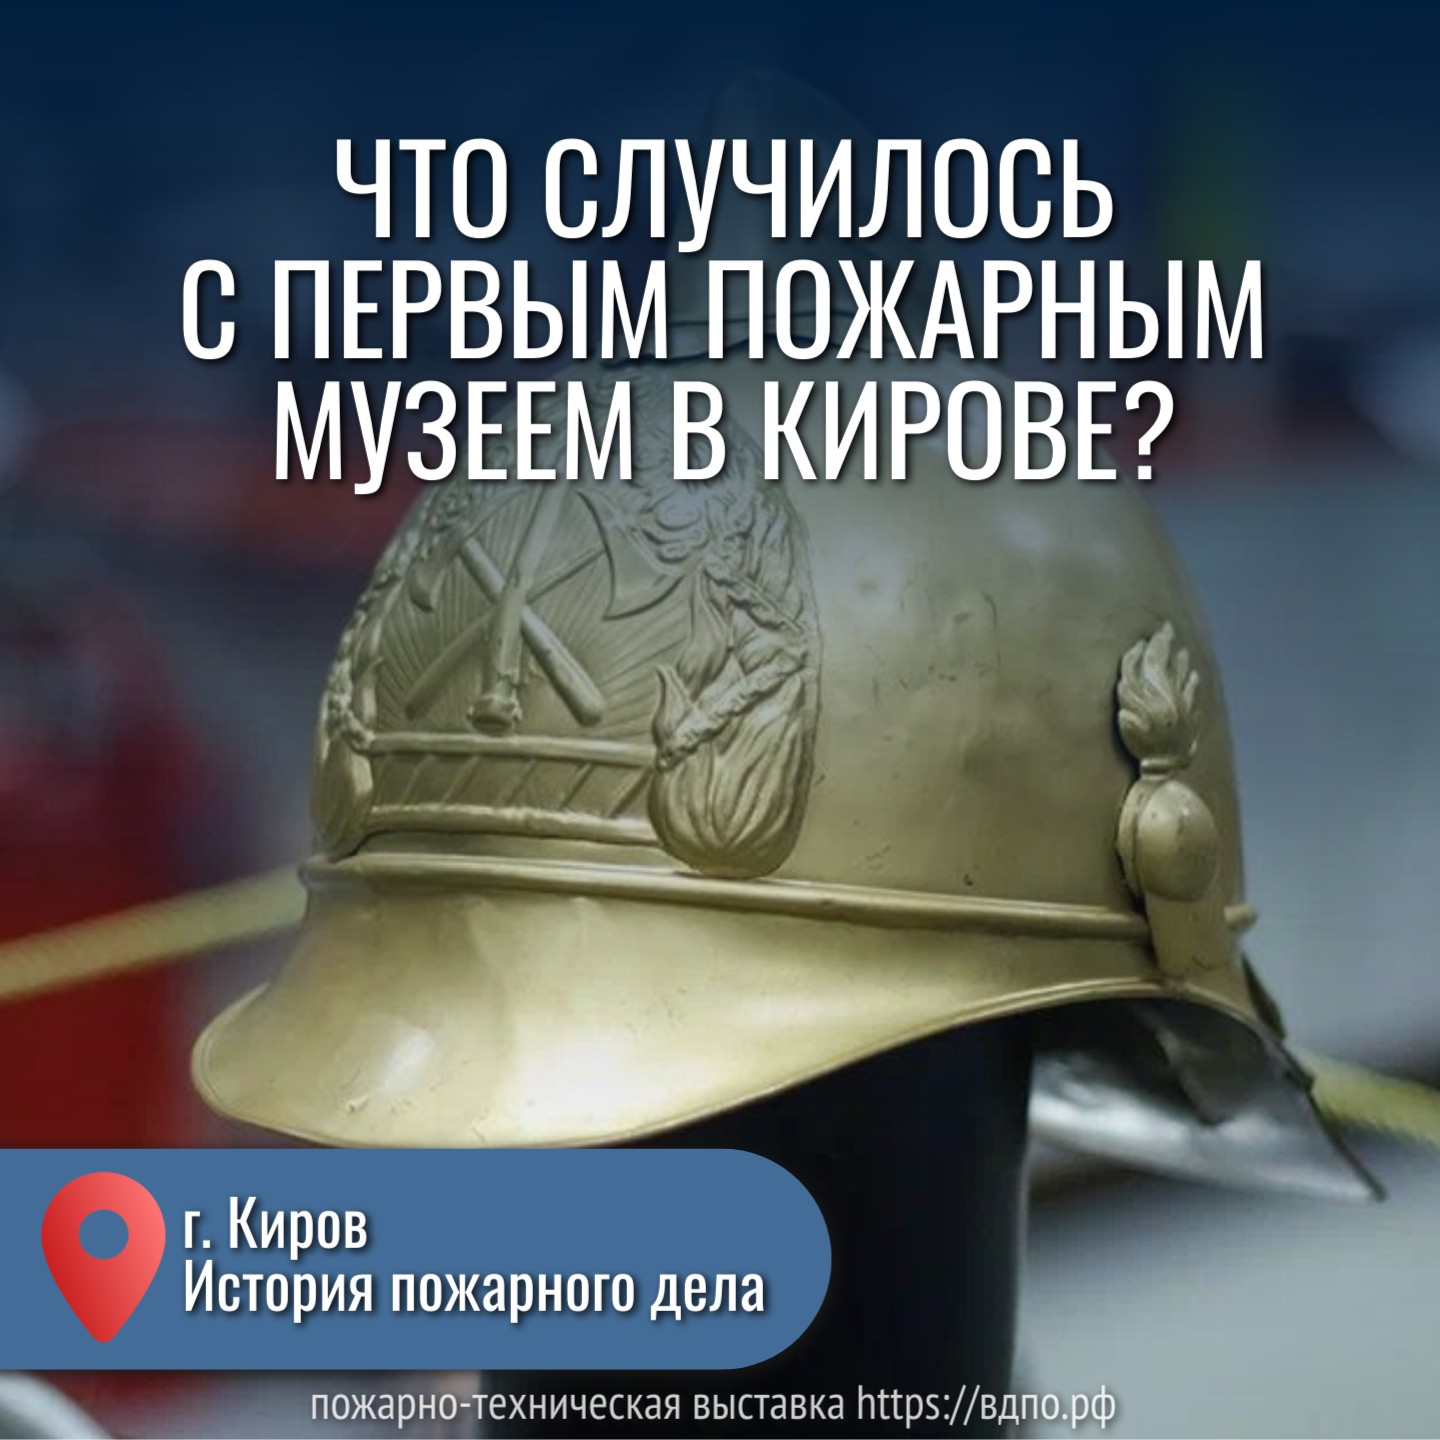 Что случилось с первым пожарным музеем в Кирове?  Впервые пожарный музей в Кирове был открыт в 1920 году.  В начале ХХ века решение о......